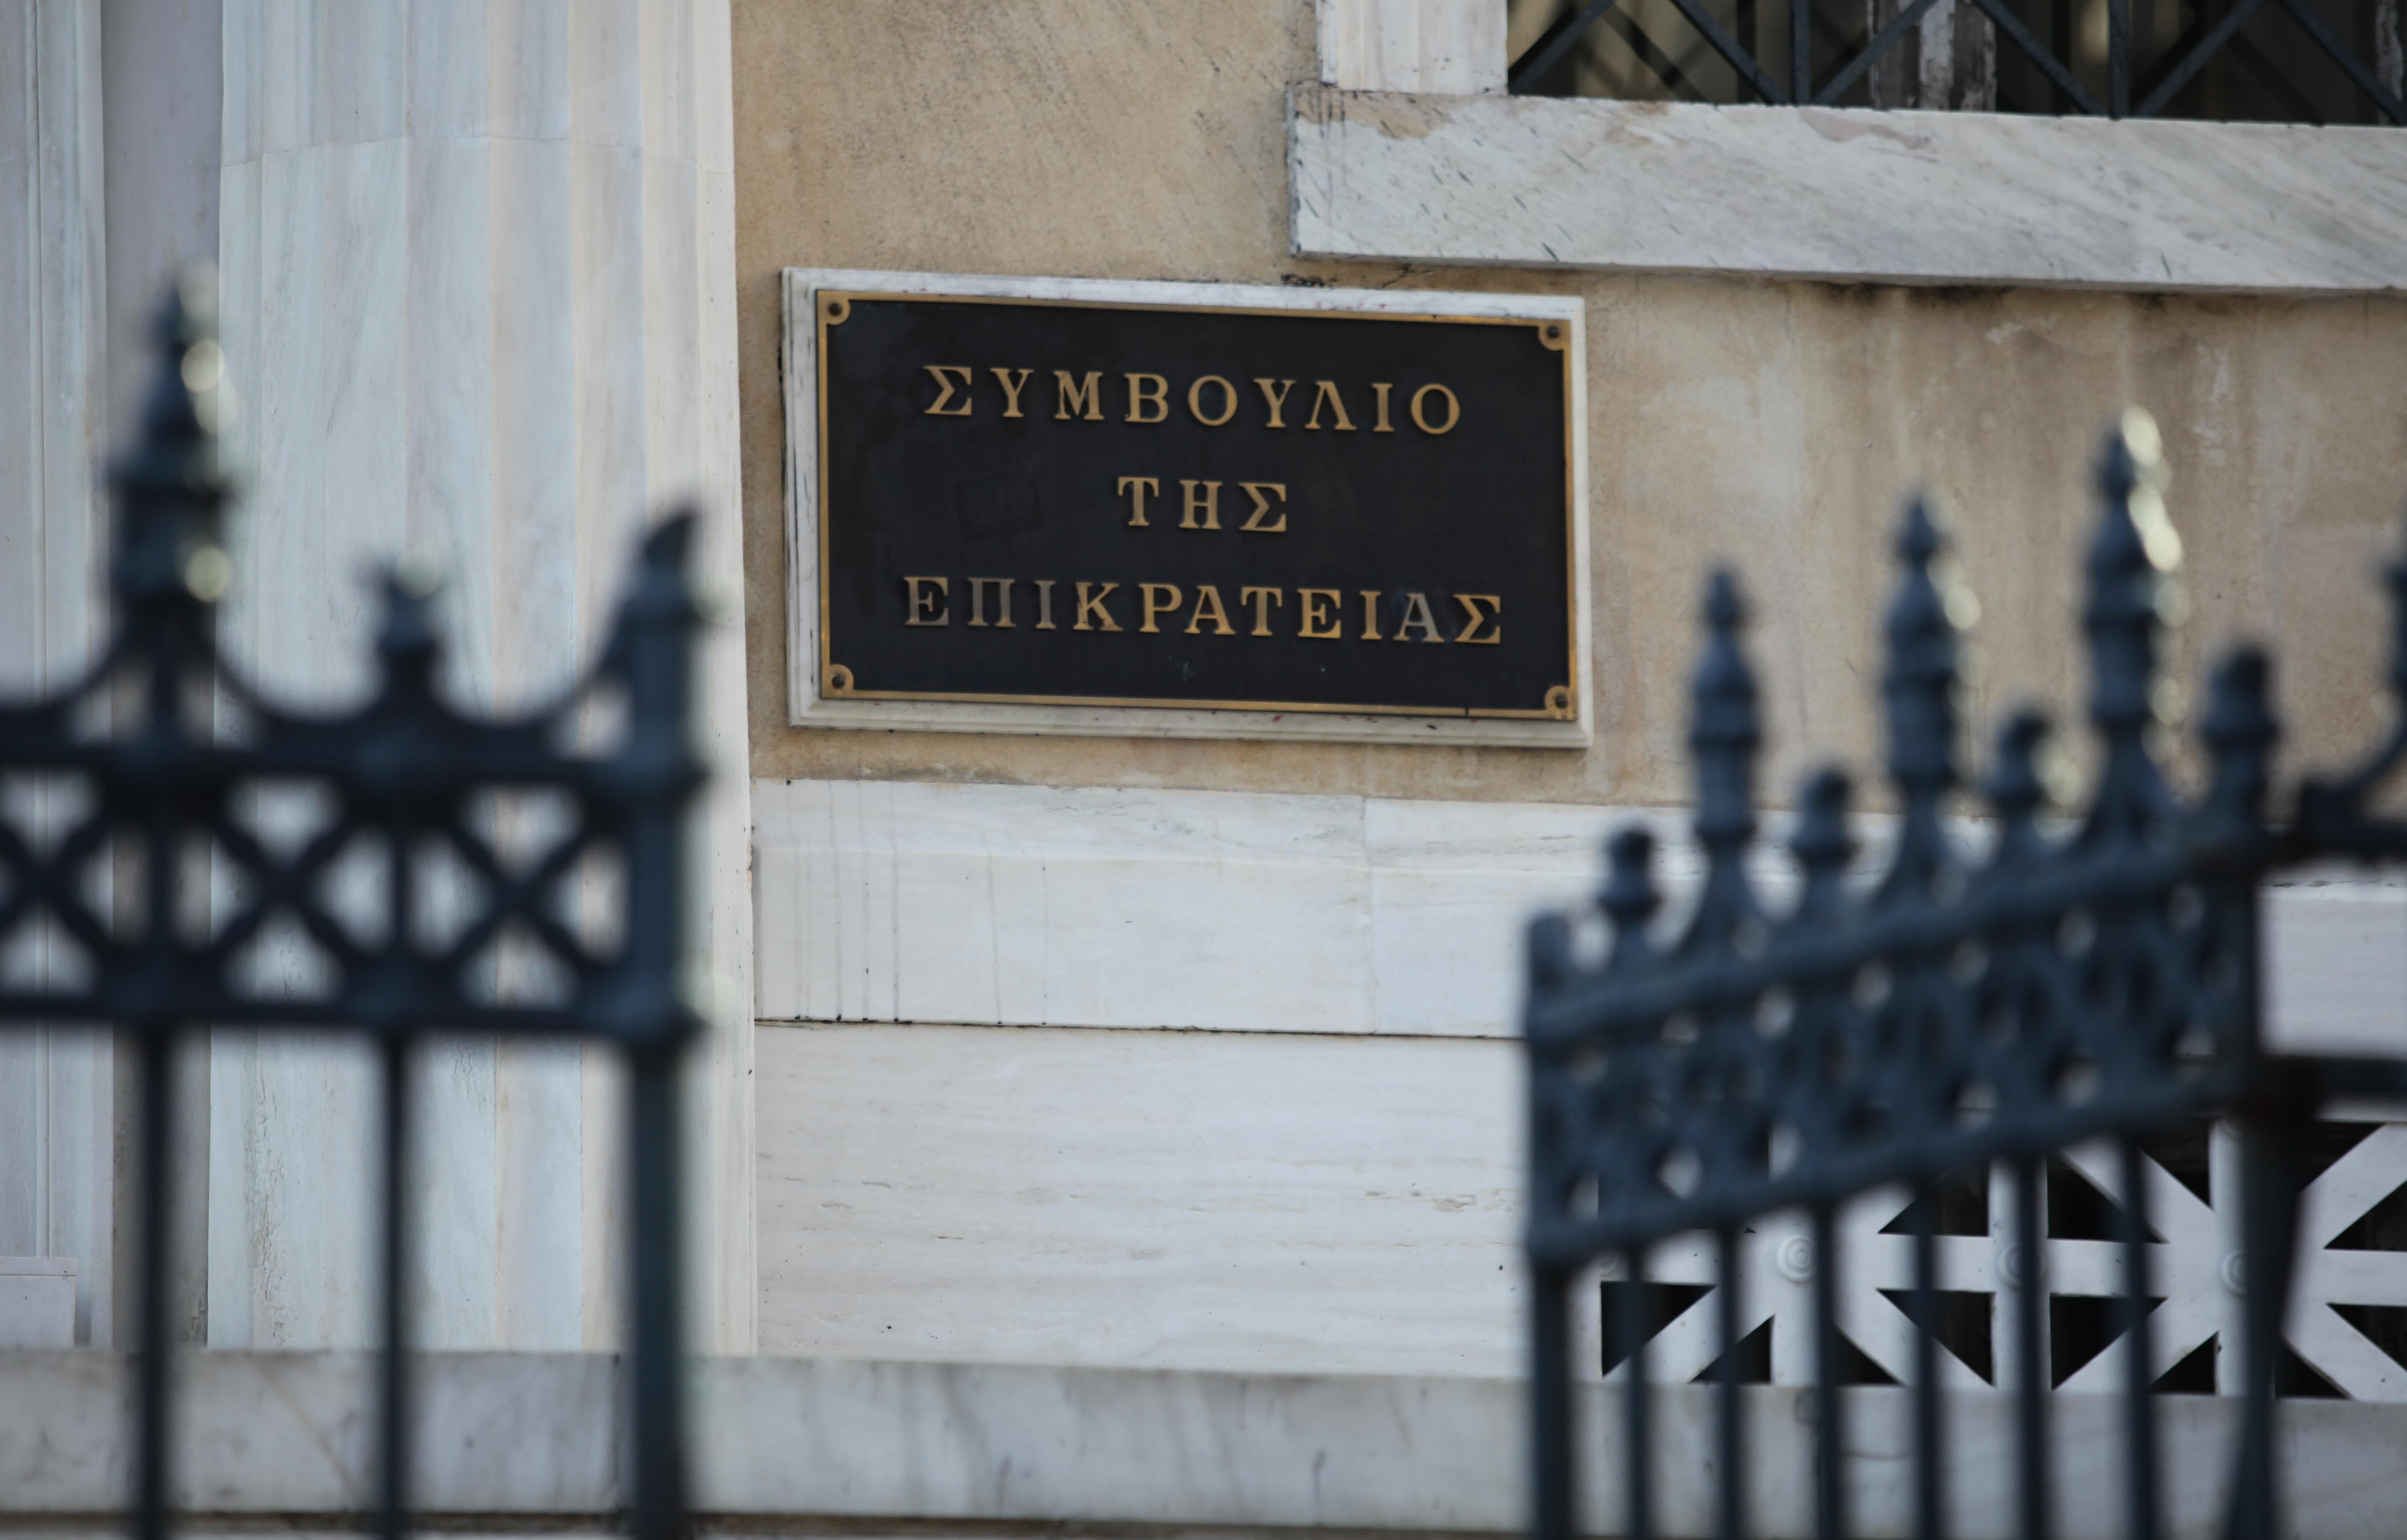 ΣτΕ: Δικαίωσε το Ευρωπαϊκό Πανεπιστήμιο Κύπρου για σπουδές «ελληνικού δικαίου»